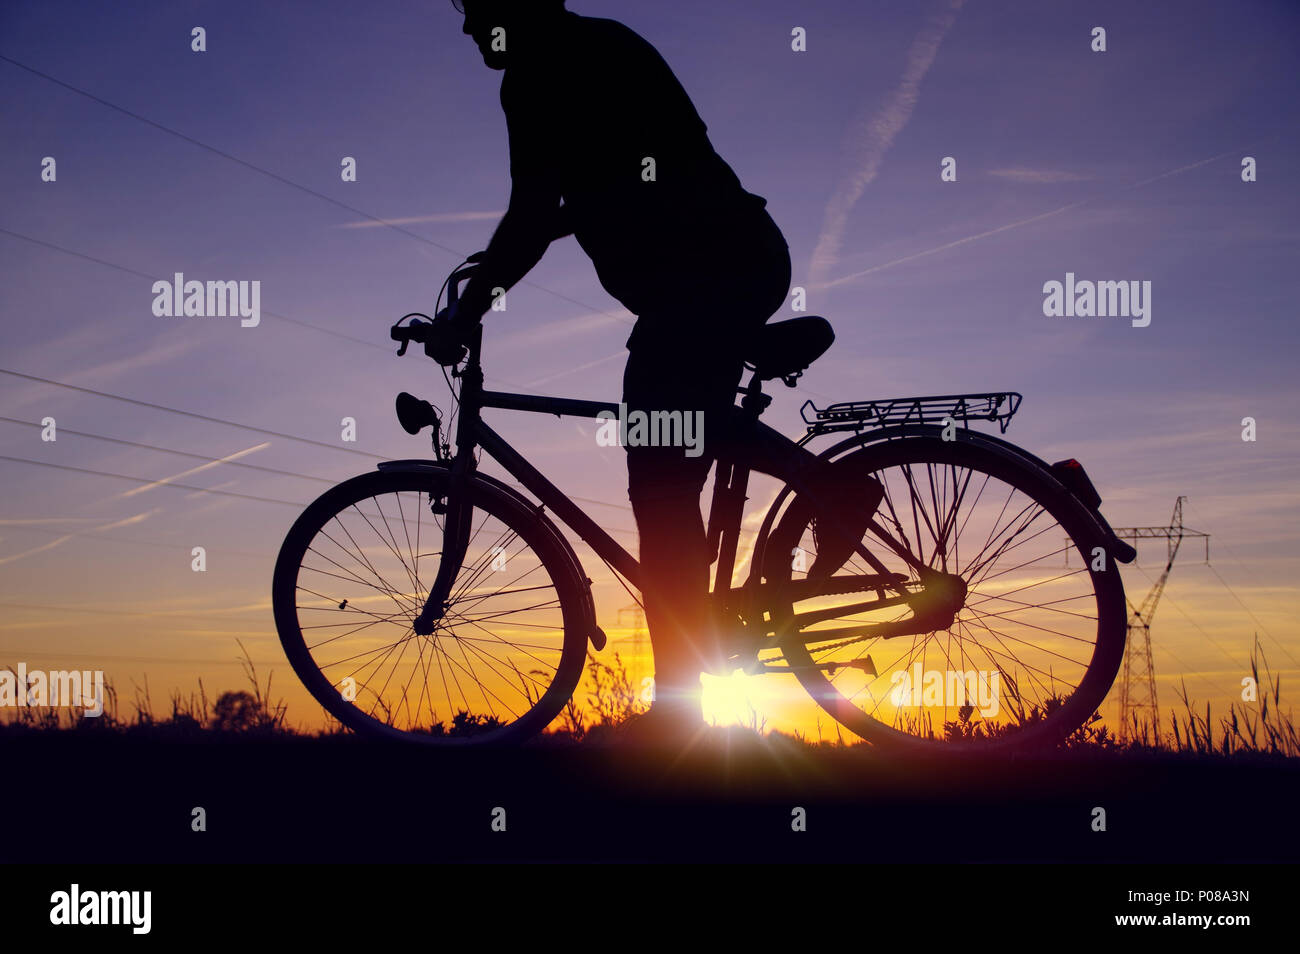 Man comando di avviamento sulla bicicletta. Silhouette del ciclista sulla bici retrò con il cielo al tramonto e campo energetico in background Foto Stock